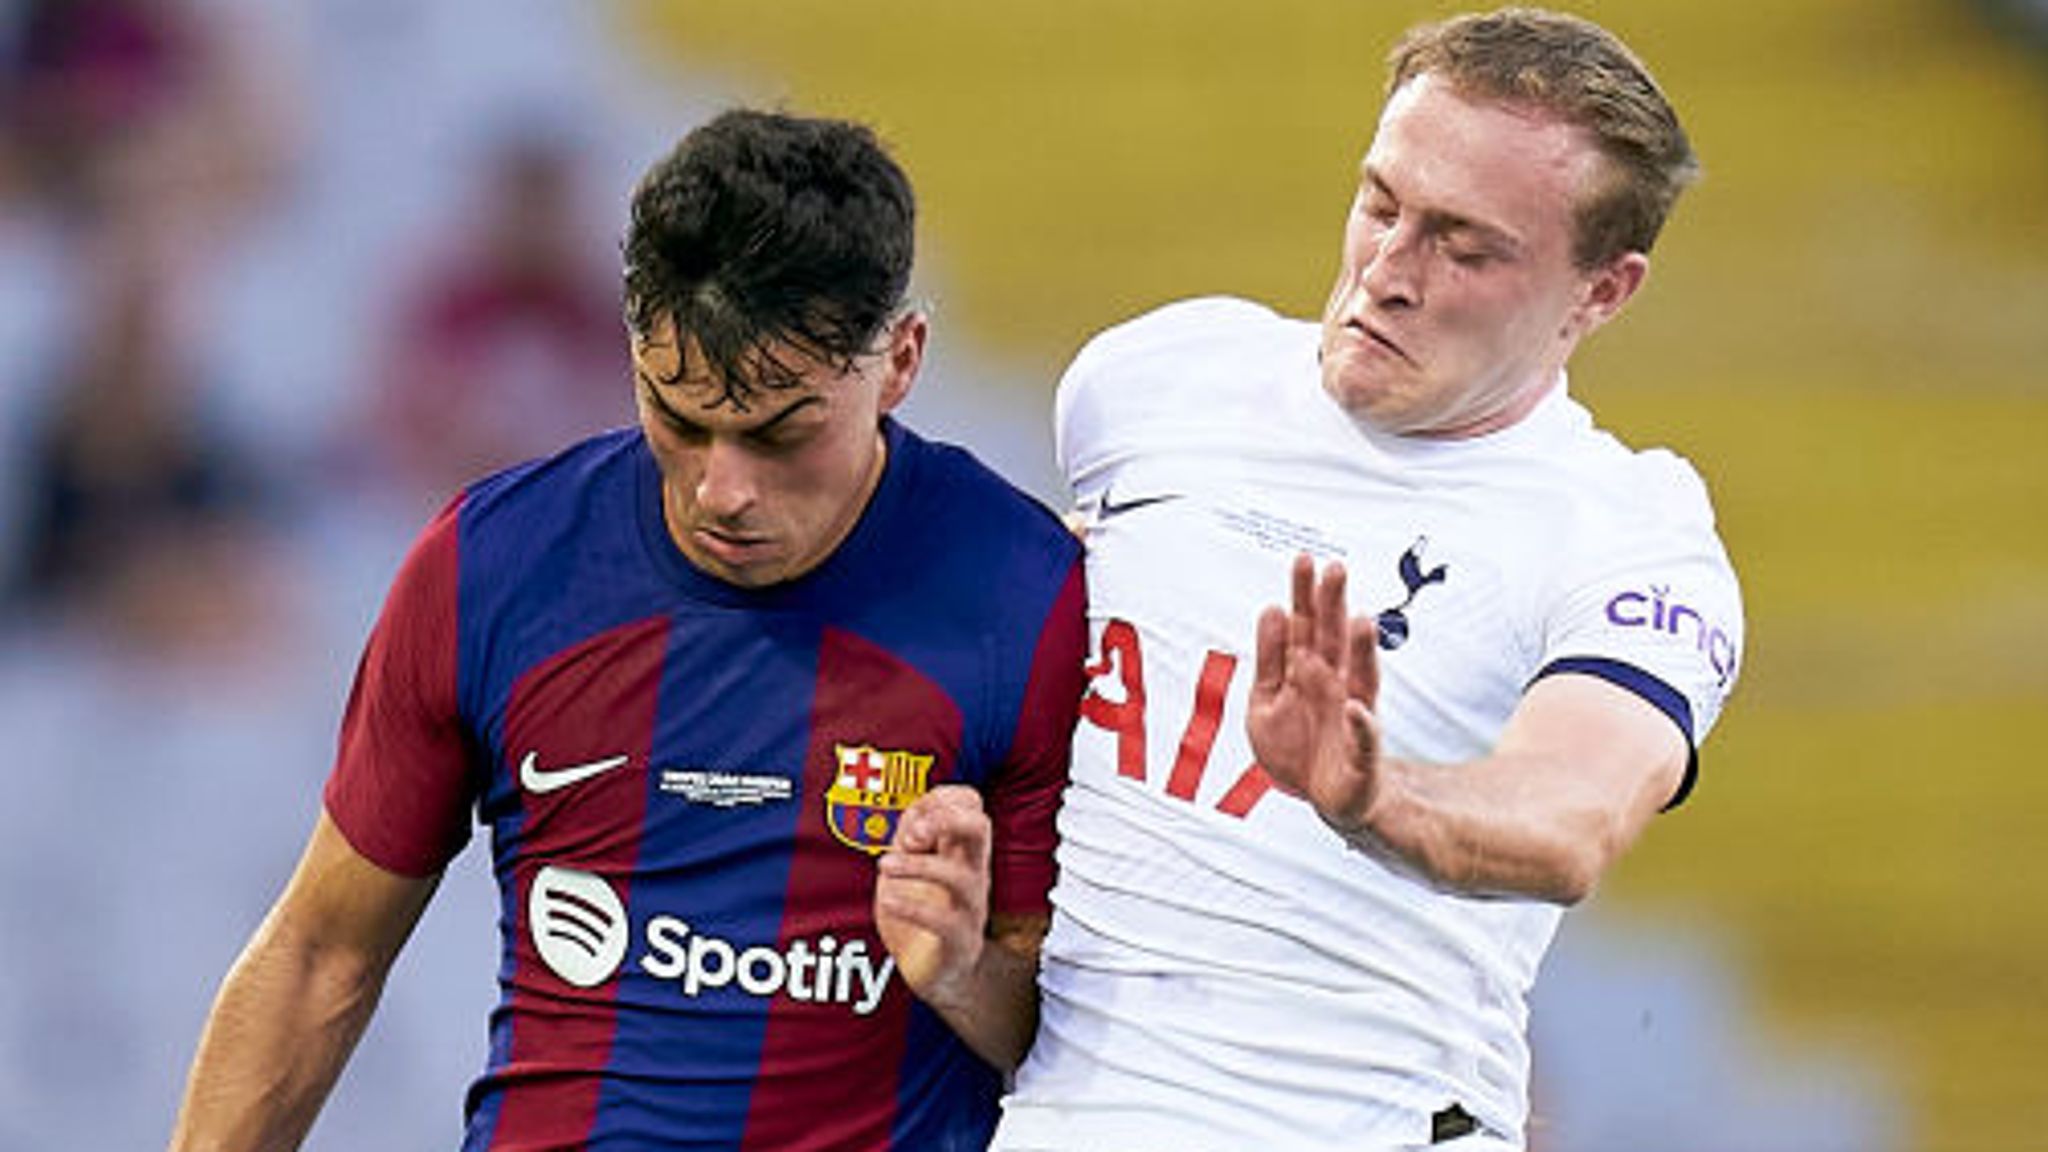 Barcelona 4-2 Tottenham: Late fightback erases Oliver Skipp's